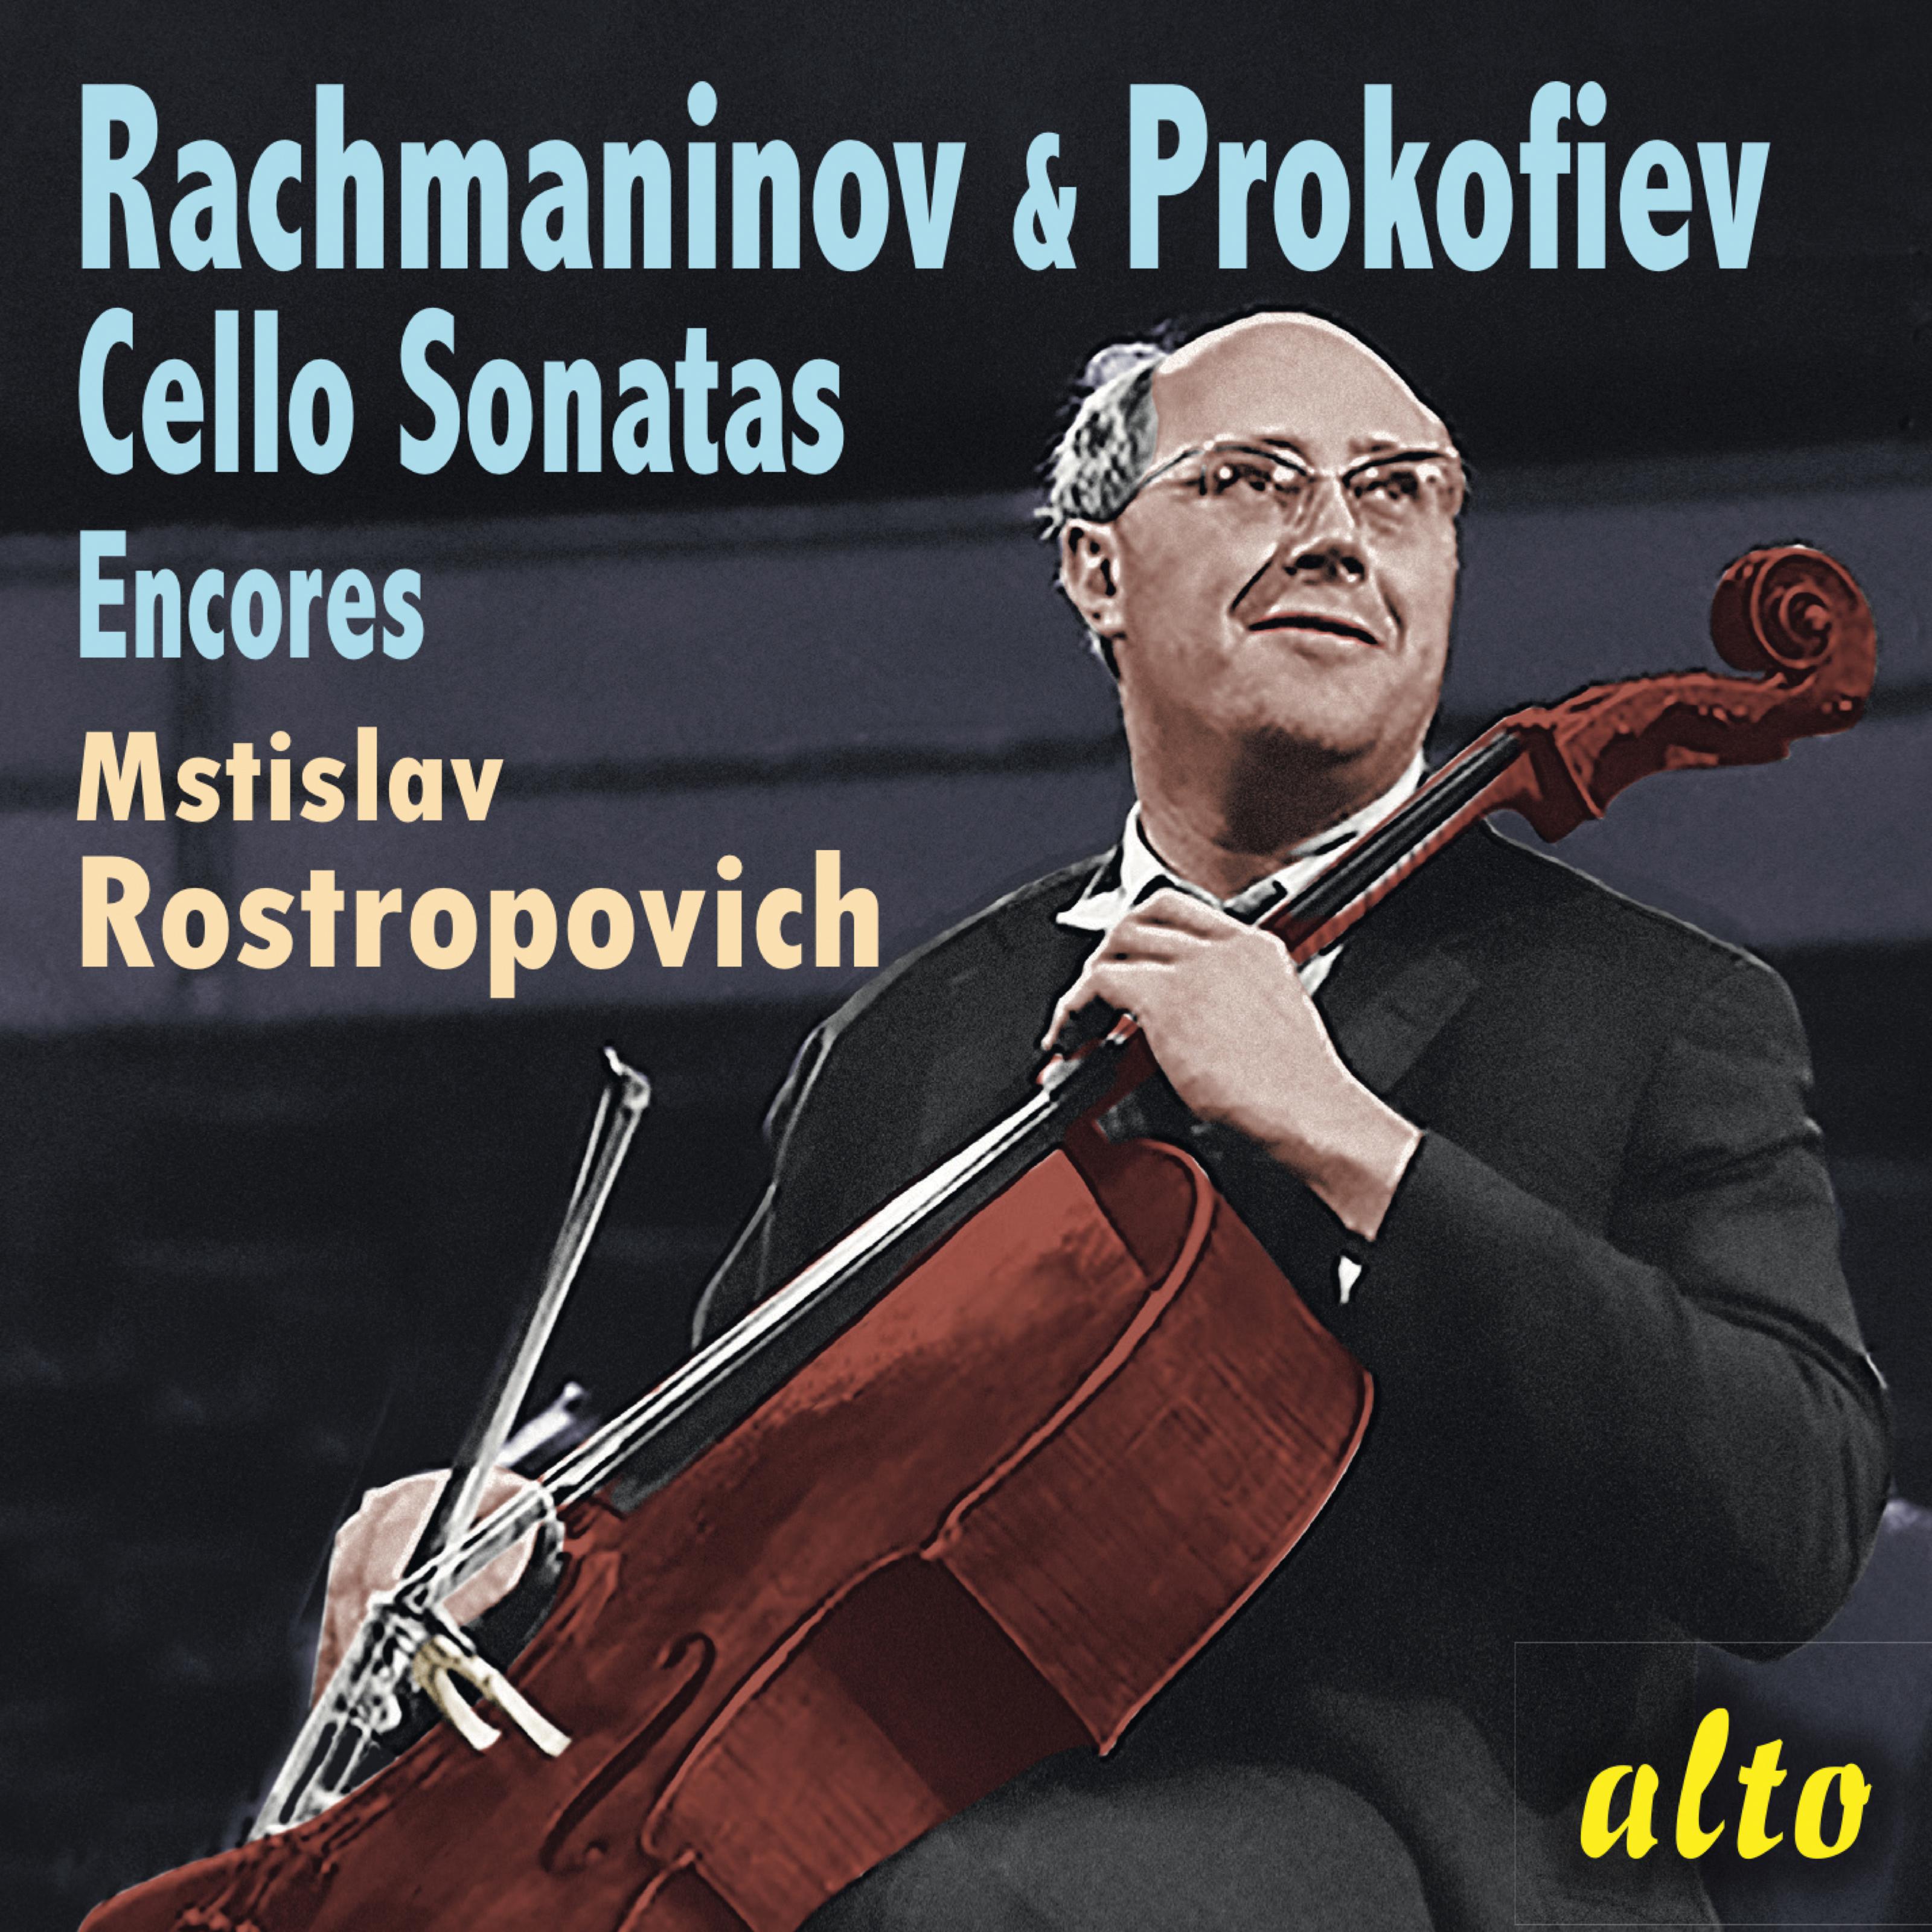 Cello Sonata in G Minor, Op. 19: I. Lento - Allegro moderato